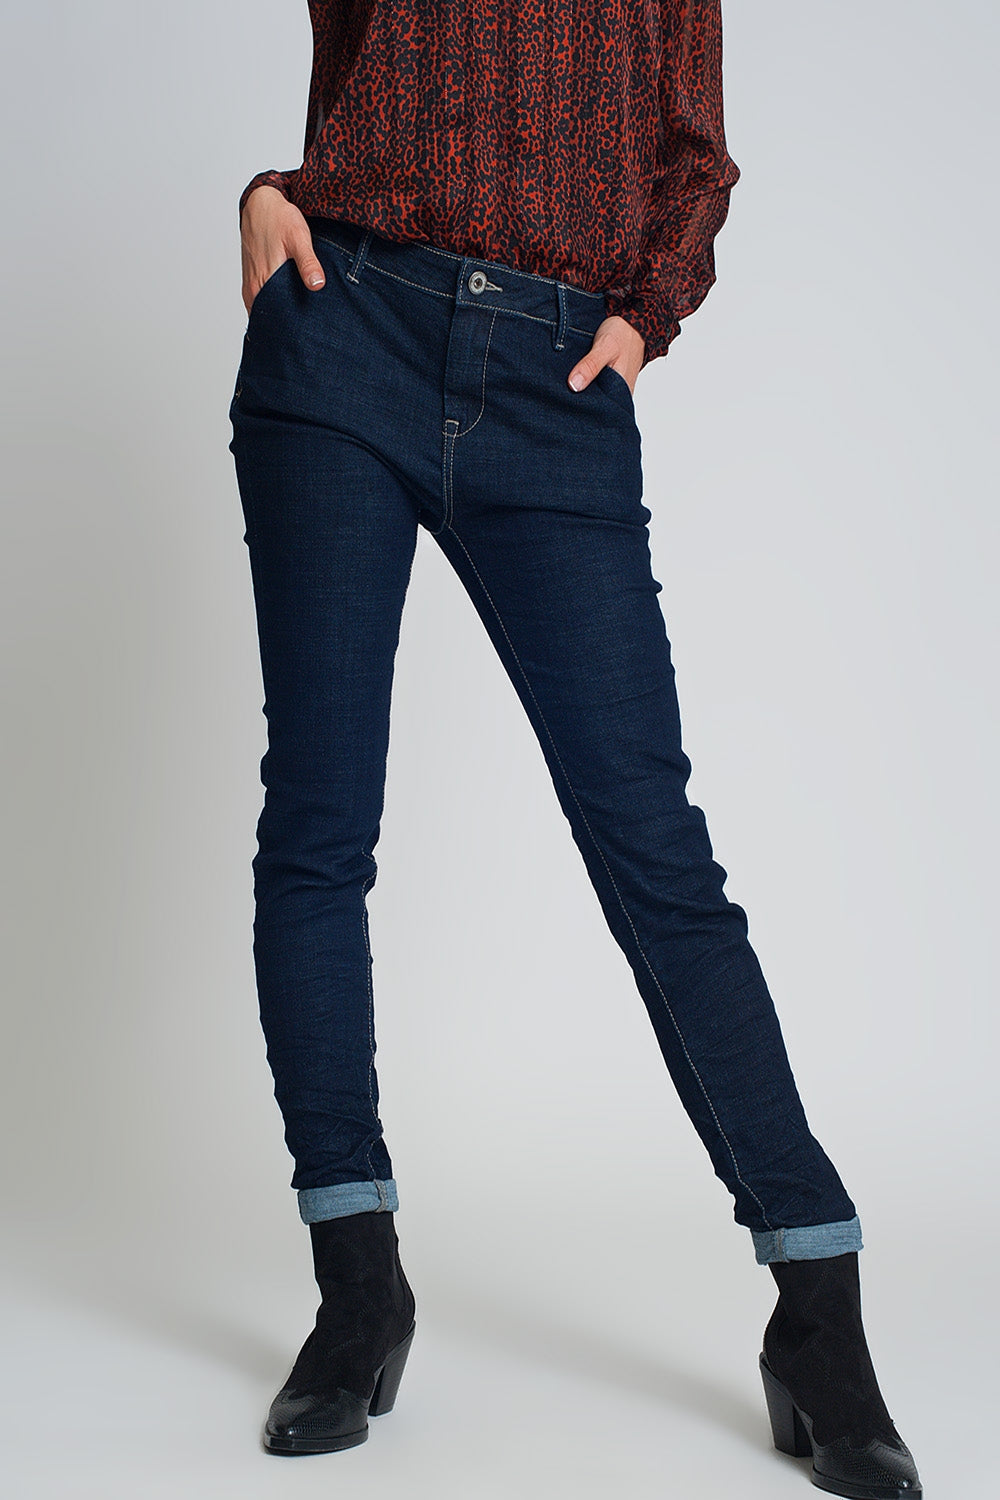 Jeans skinny corte estilo chino